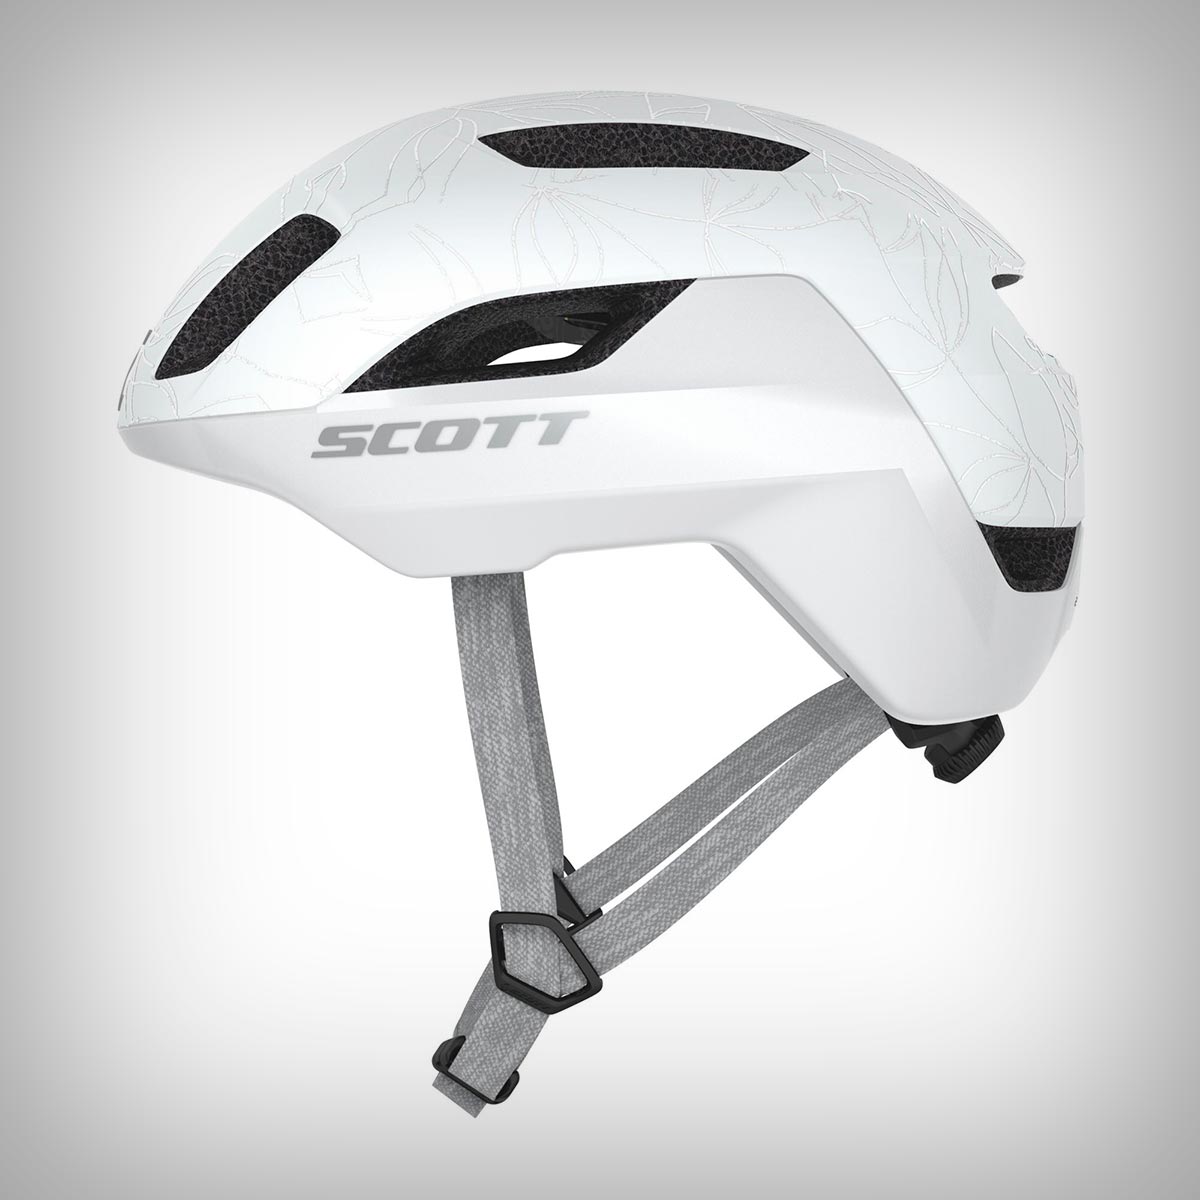 Scott Sports presenta La Mokka Plus Sensor, un casco con MIPS y luz de freno automática